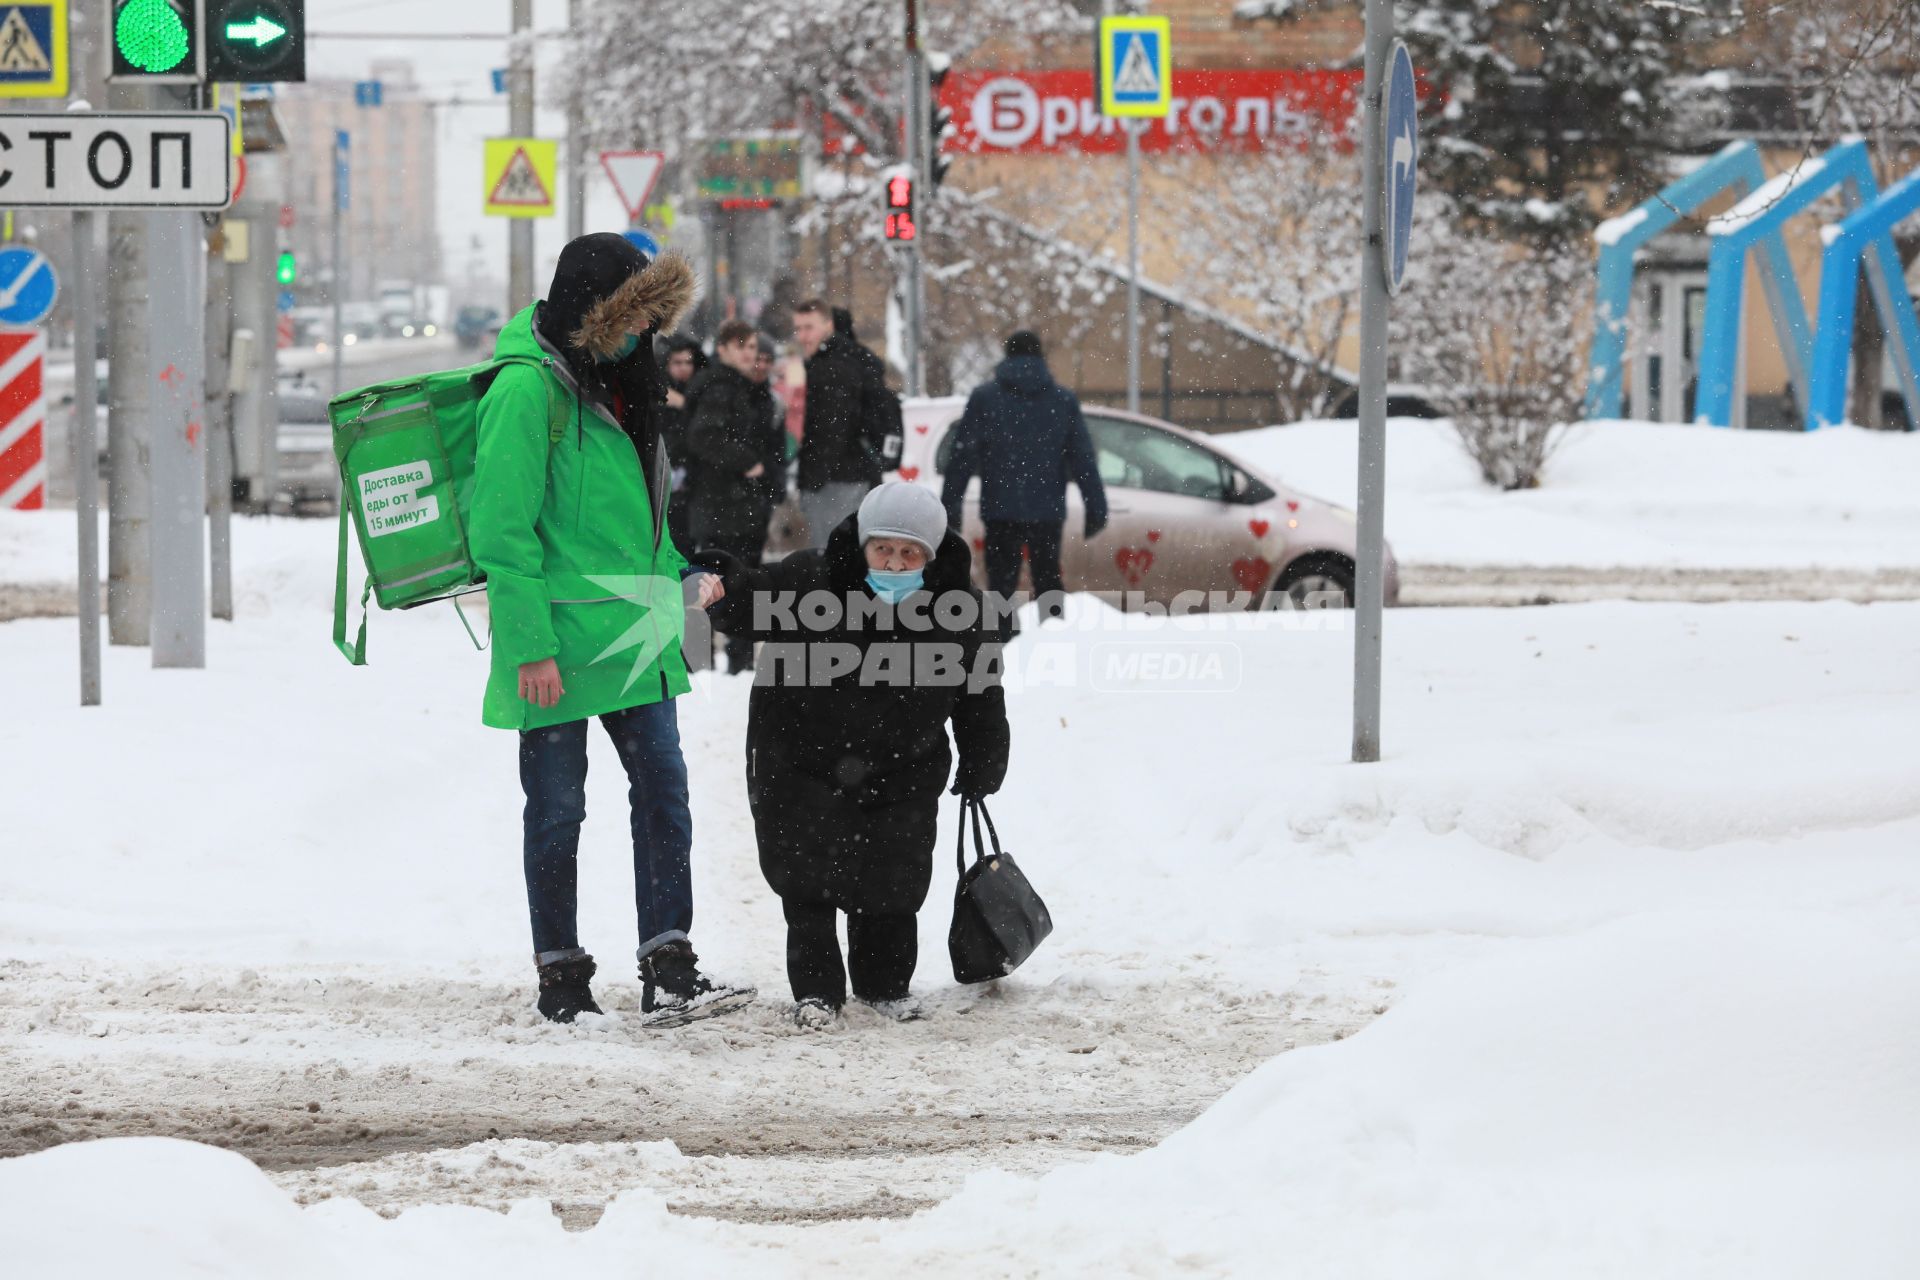 Красноярск. Юноша помогает пожилой женщине перейти дорогу, неубранную от снега.